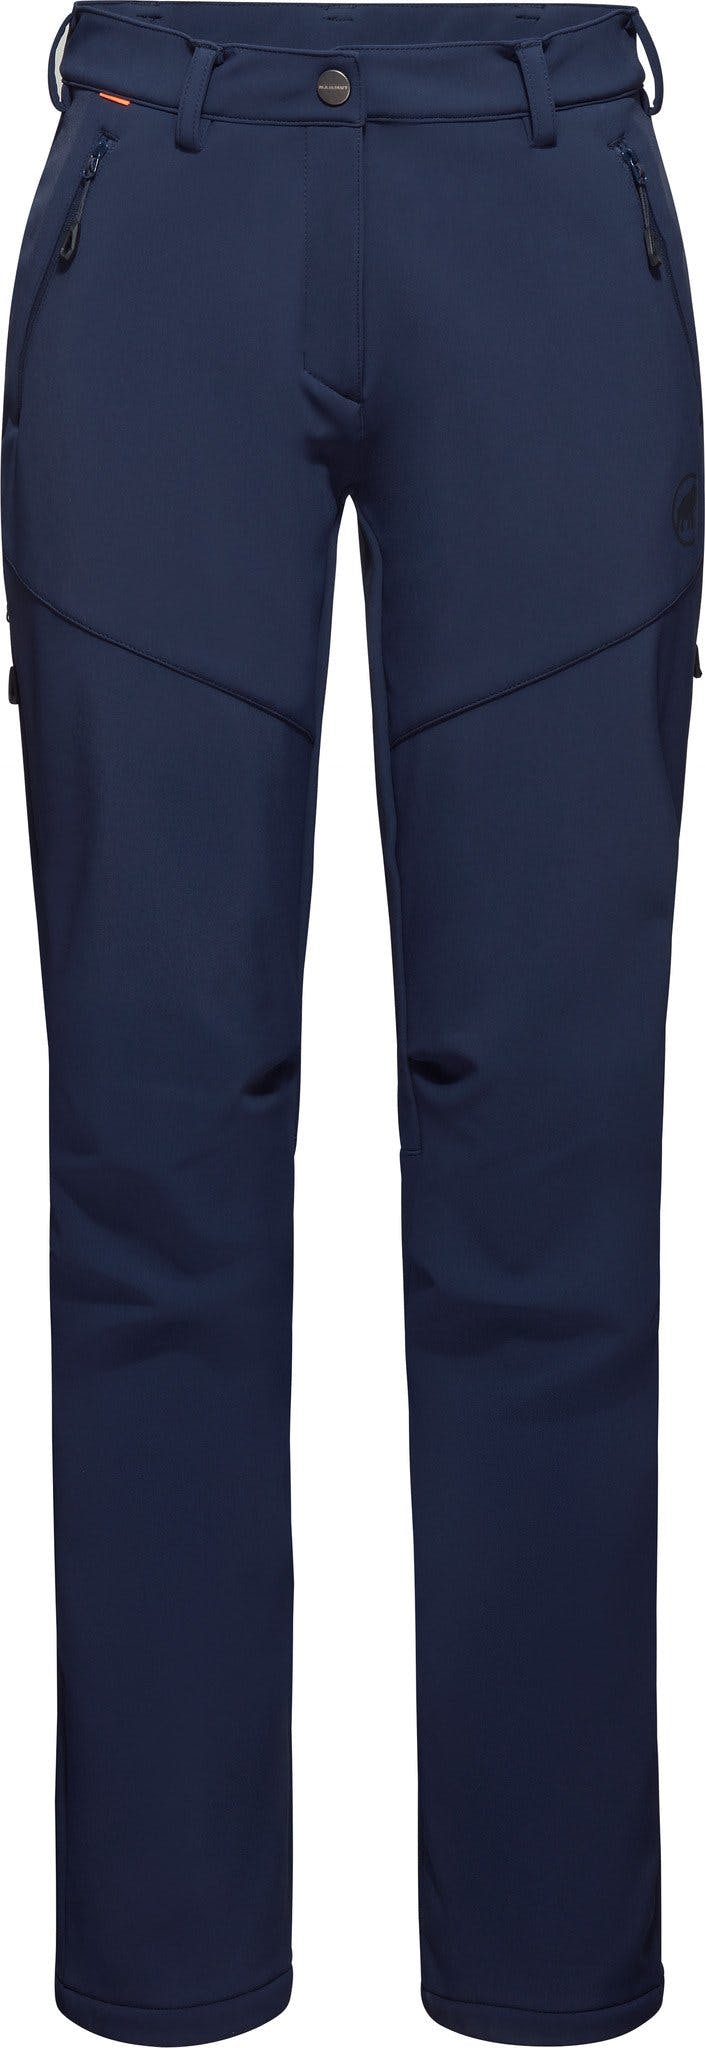 Numéro de l'image de la galerie de produits 1 pour le produit Pantalon de randonnée hivernale SO - Femme